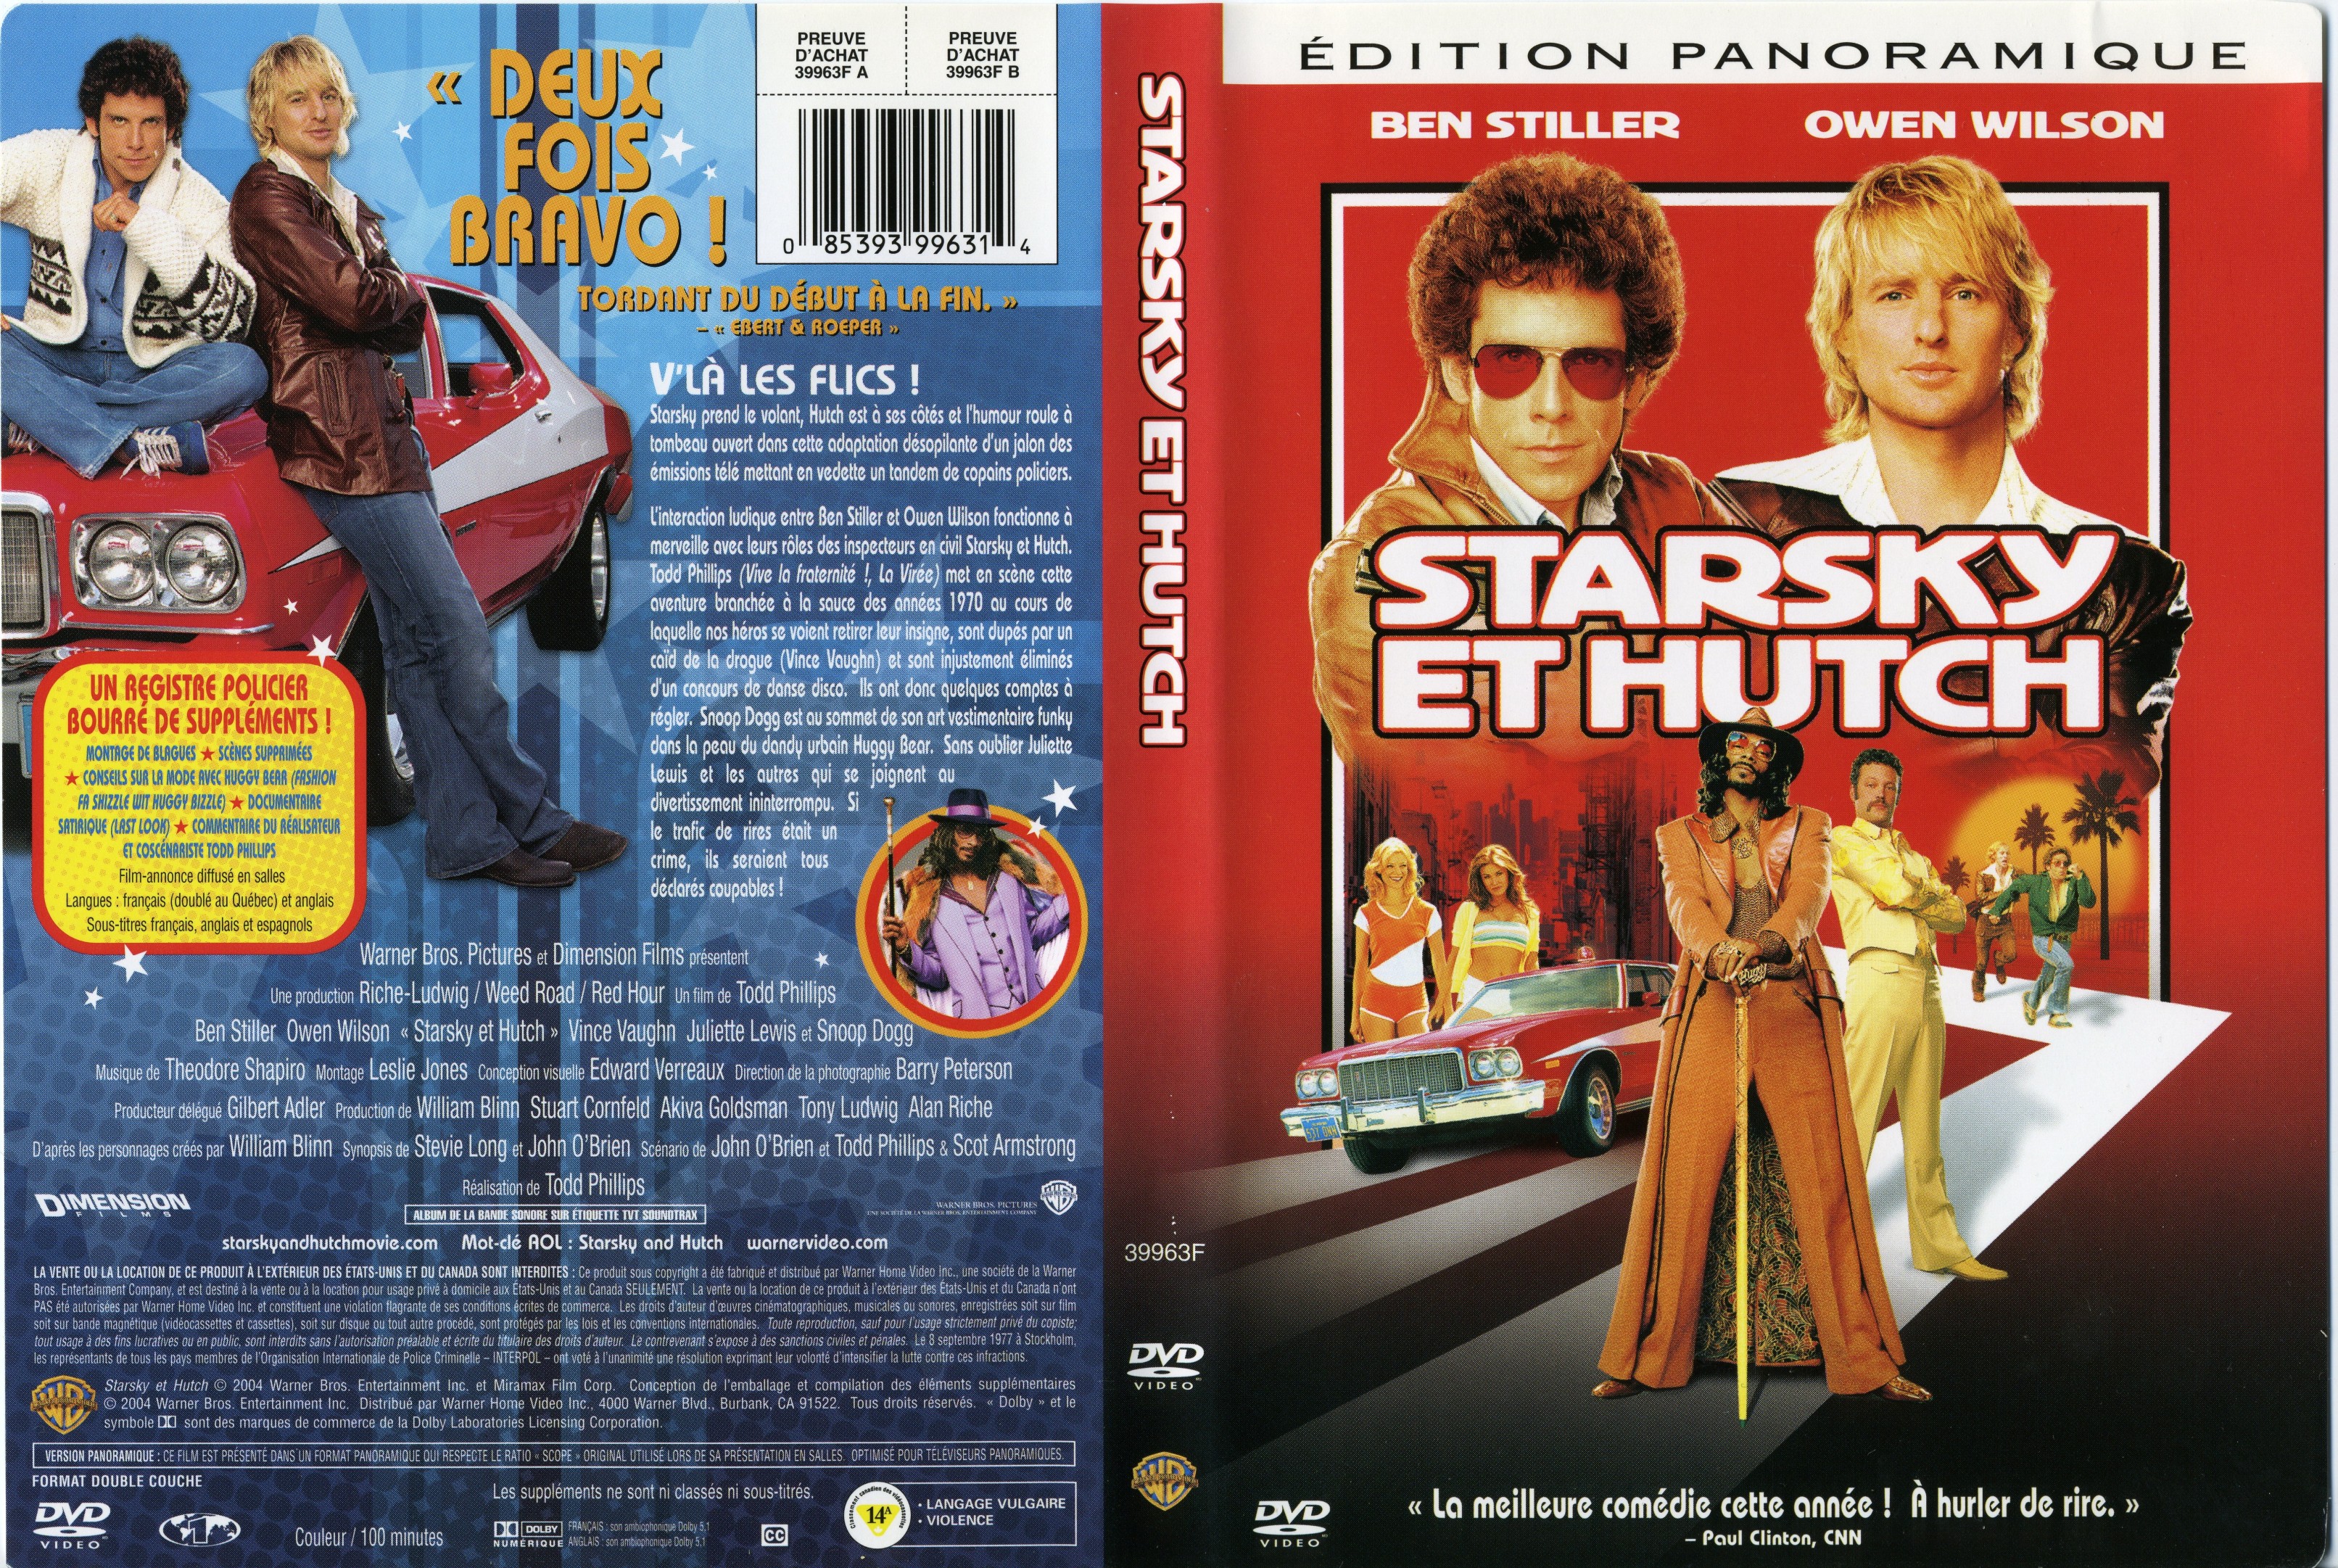 Jaquette DVD Starsky et Hutch v2